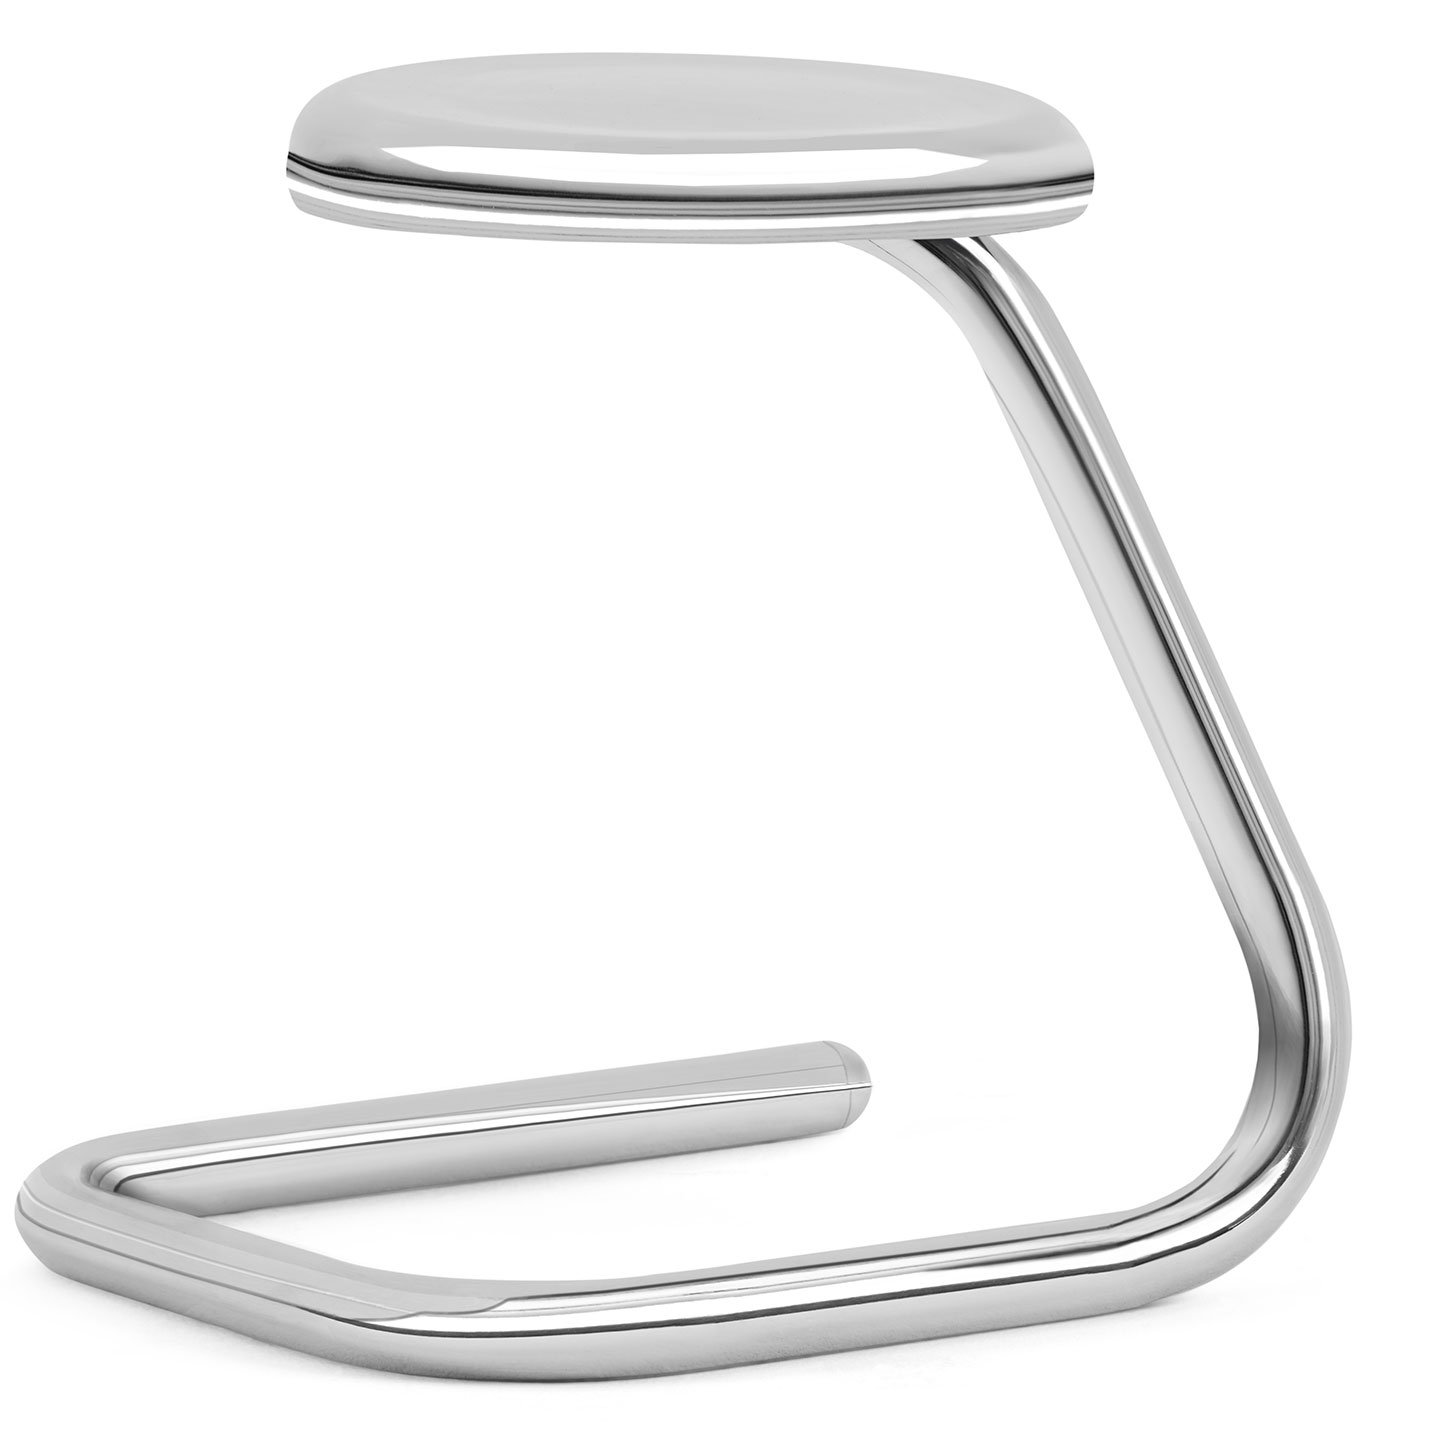 Haworth K700 stool in metal in angular view